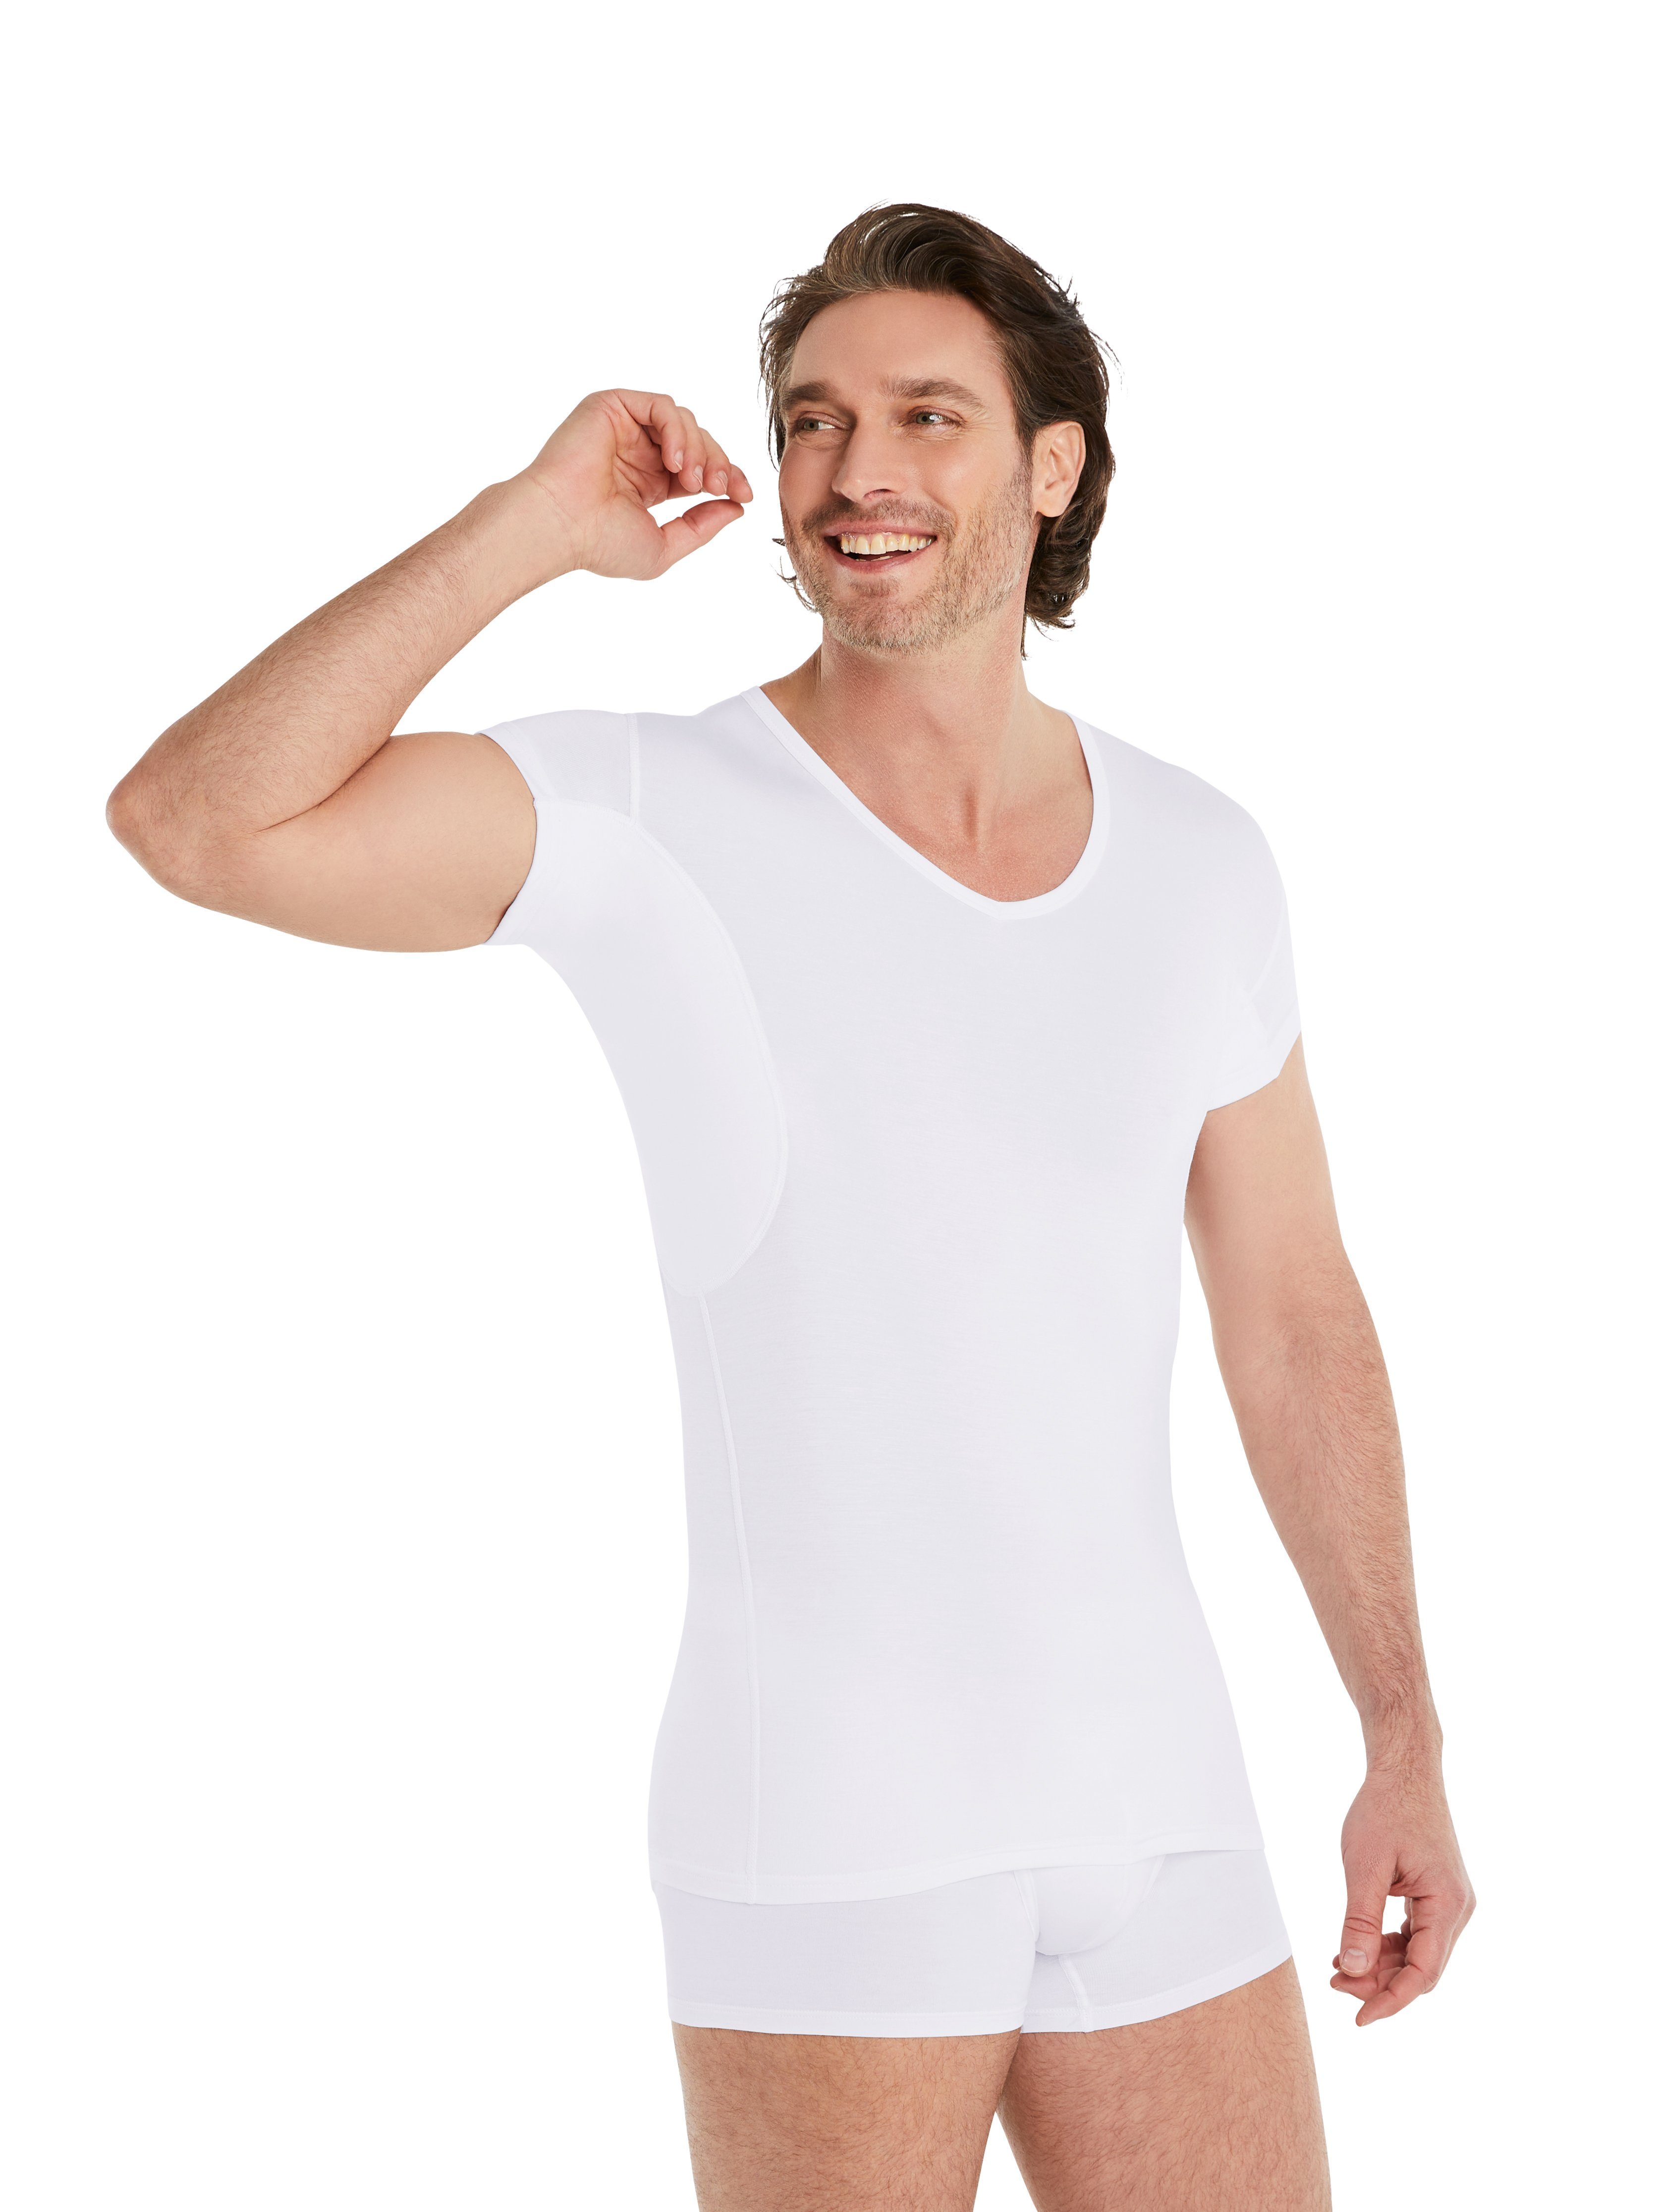 FINN Design Unterhemd Anti-Schweiß - extra kurzen Ärmeln Ärmel verkürztem Unterhemd mit Kurzarm-Hemden und Polo-Shirts mit Herren unter Perfekt